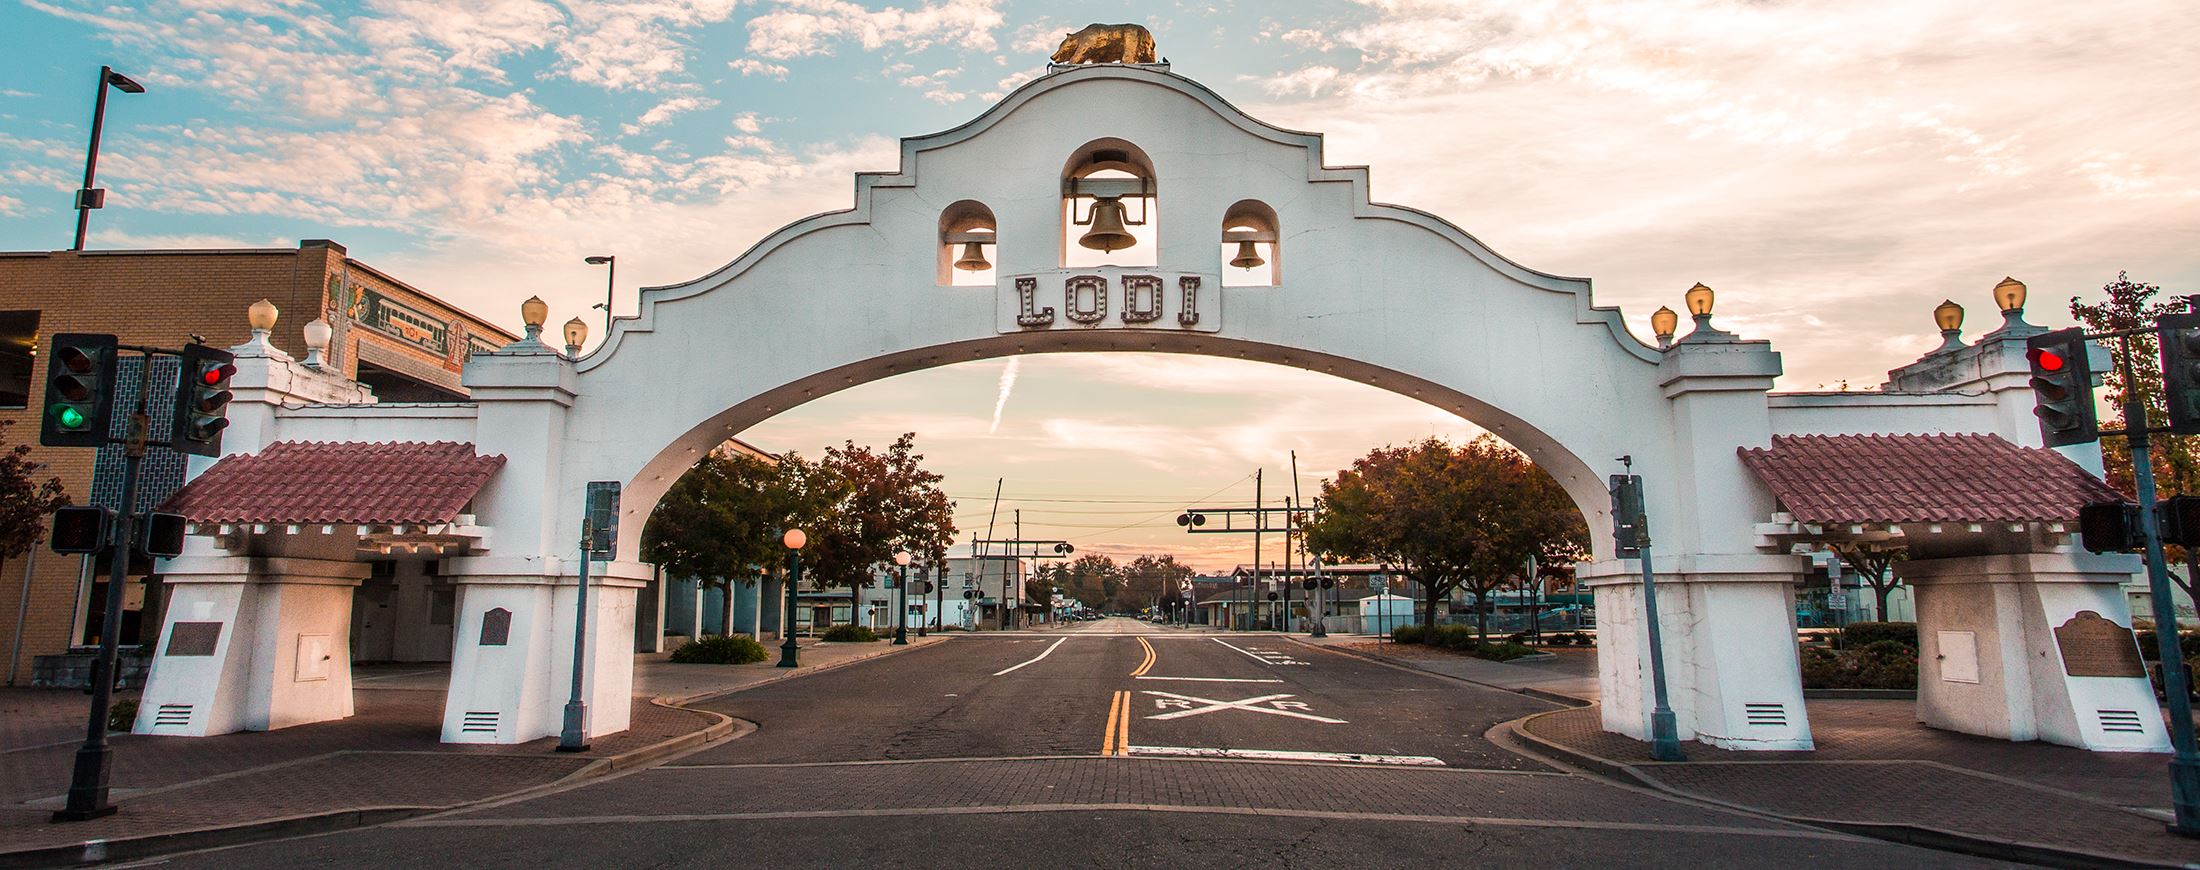 Mission Arch (Lodi Arch) in Lodi, California